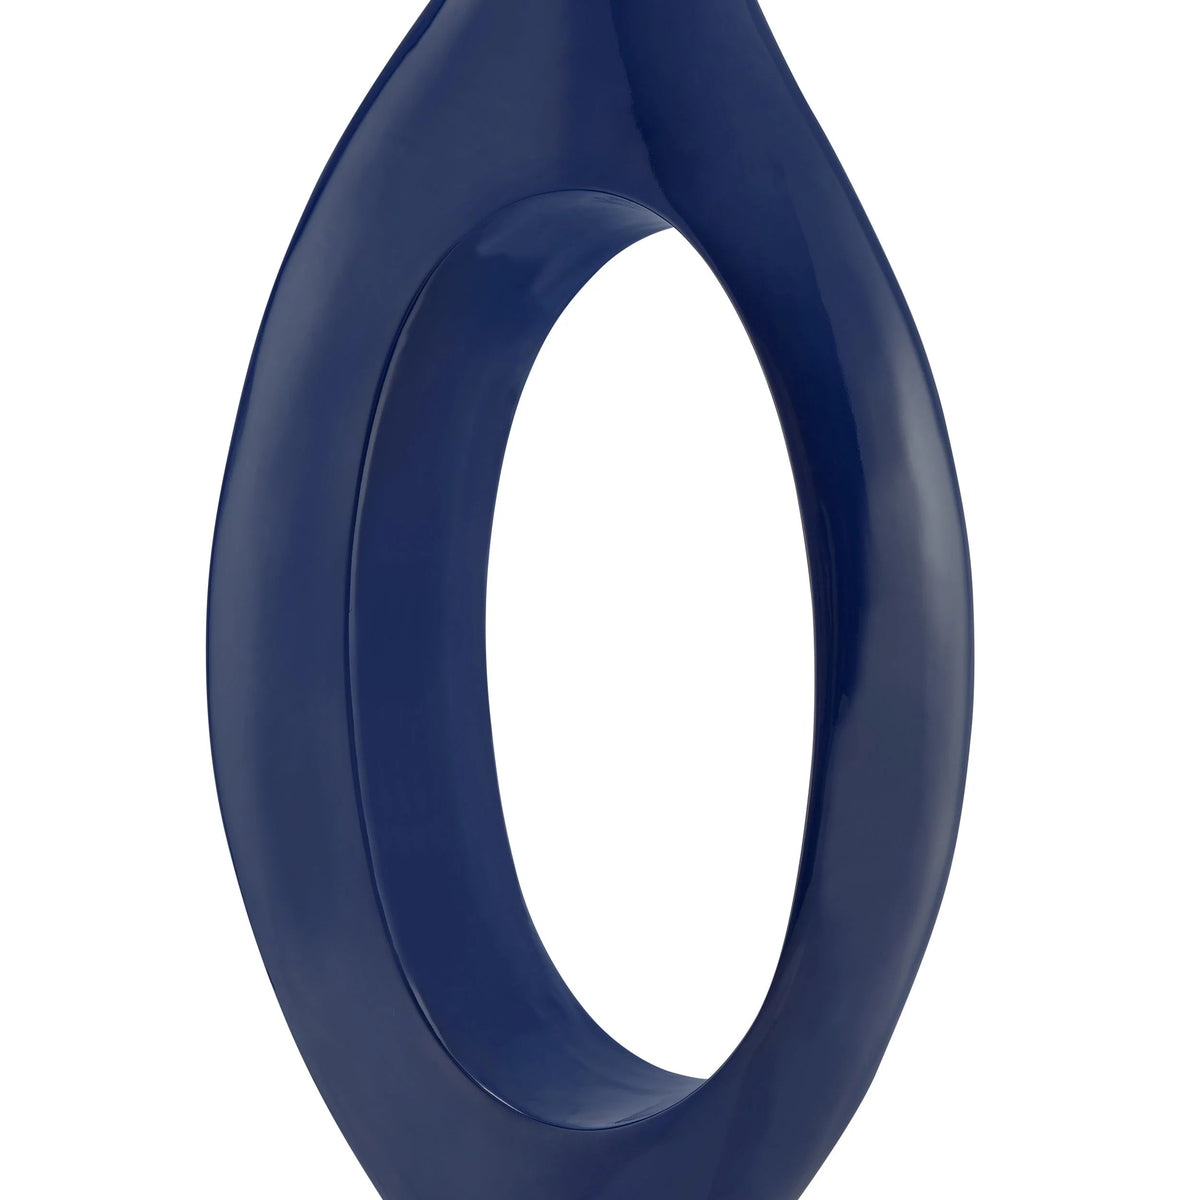 Large Decorative Blue-Navy Trombone Vase